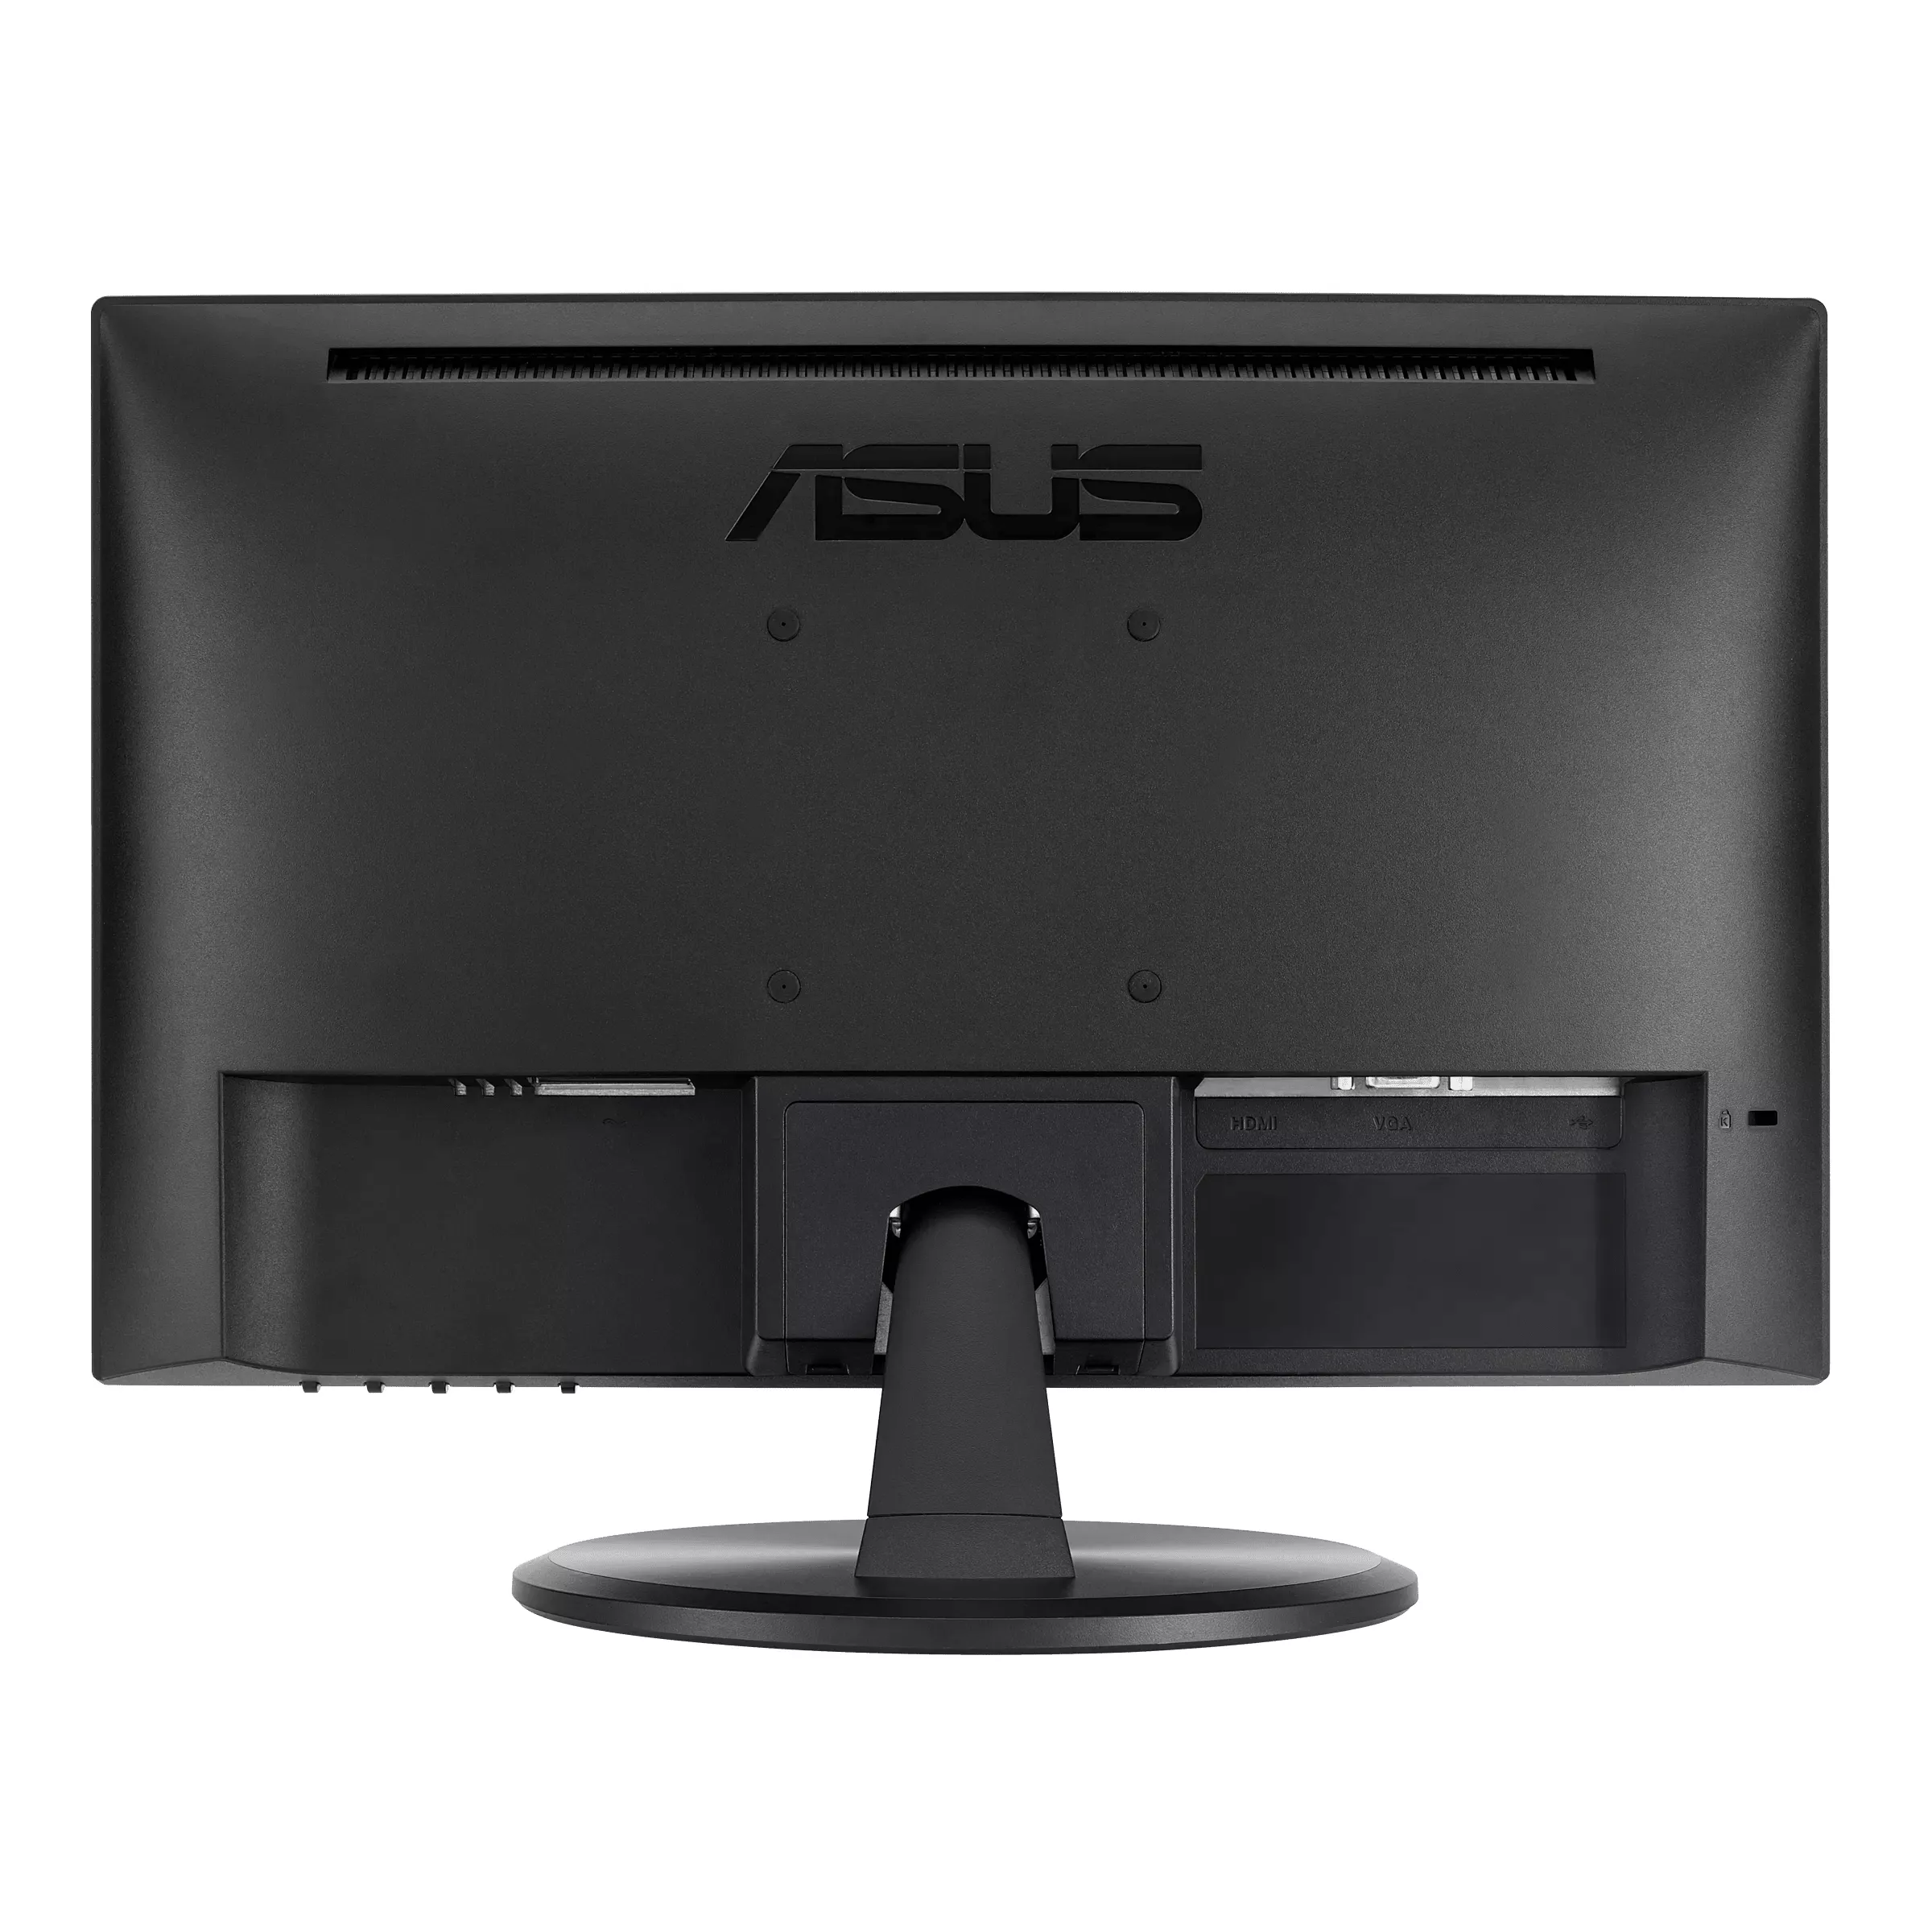 Vente ASUS MON VT168HR 15.6p Tactile FAUX 3-year warranty ASUS au meilleur prix - visuel 4